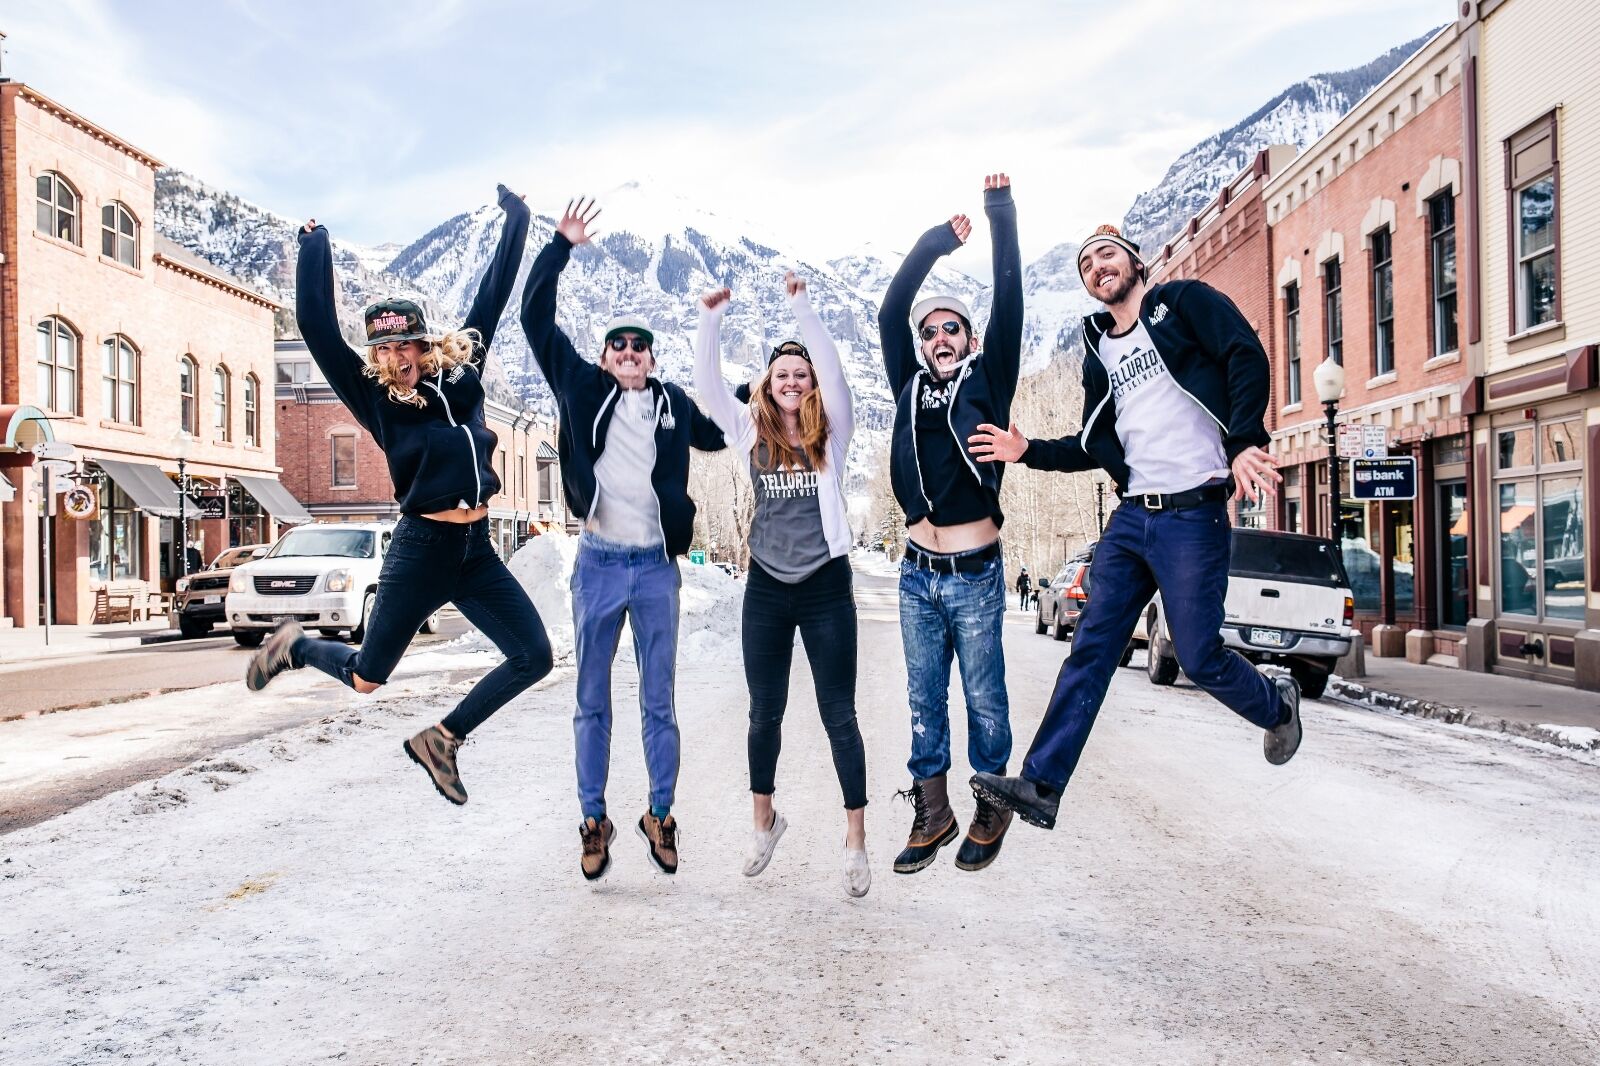 People jumping in the air at Telluride gay ski week